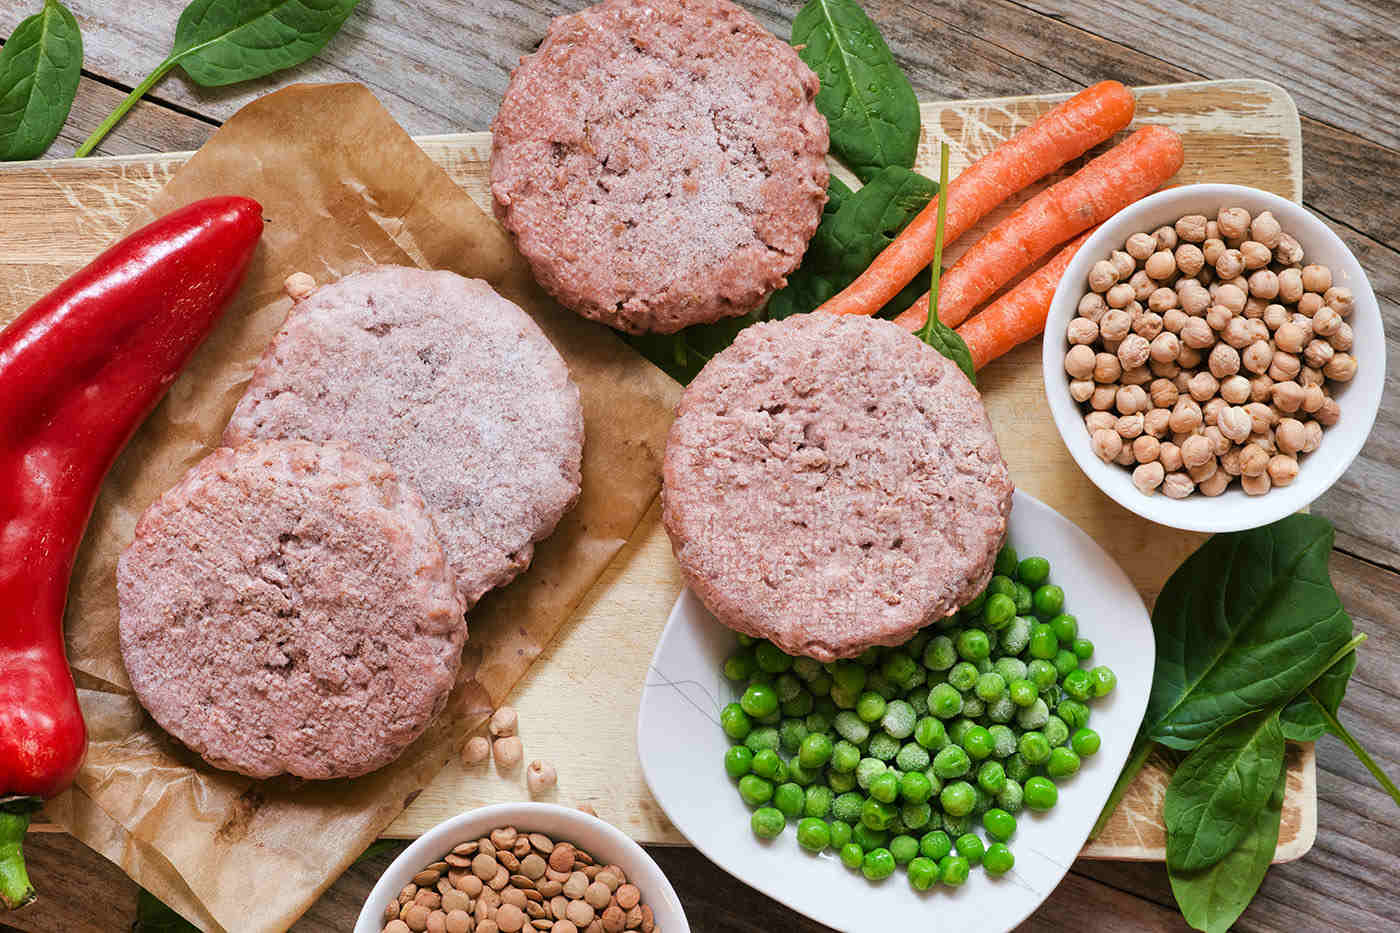 Carne vegetala sau inlocuitori de carne: ce este "falsa" carne industriala si unde se gaseste?